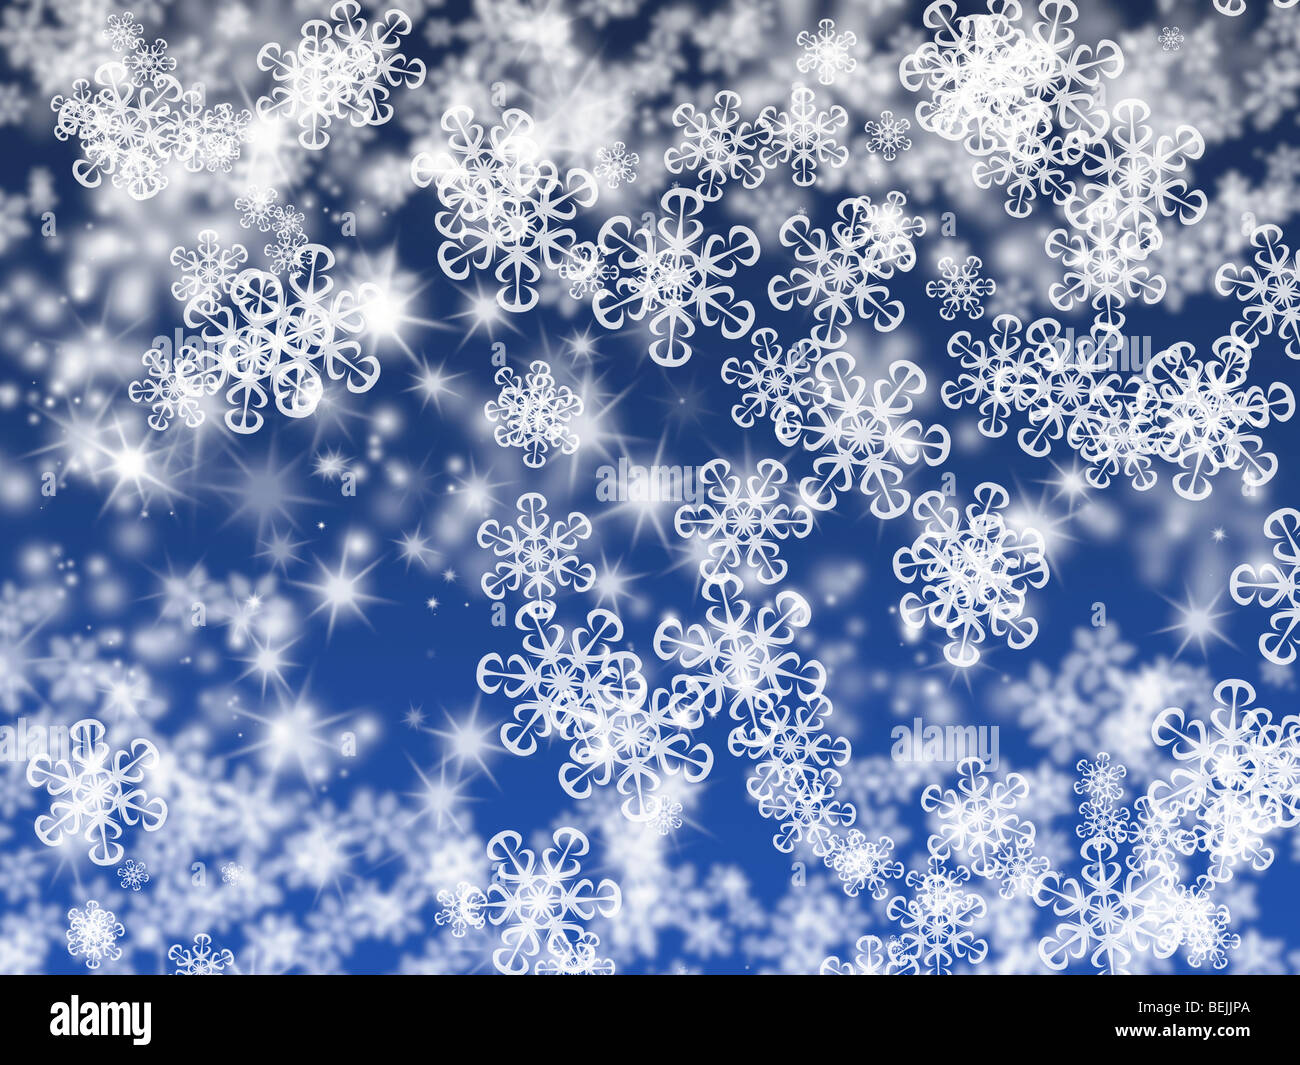 Illustration of blue Christmas background Stock Photo